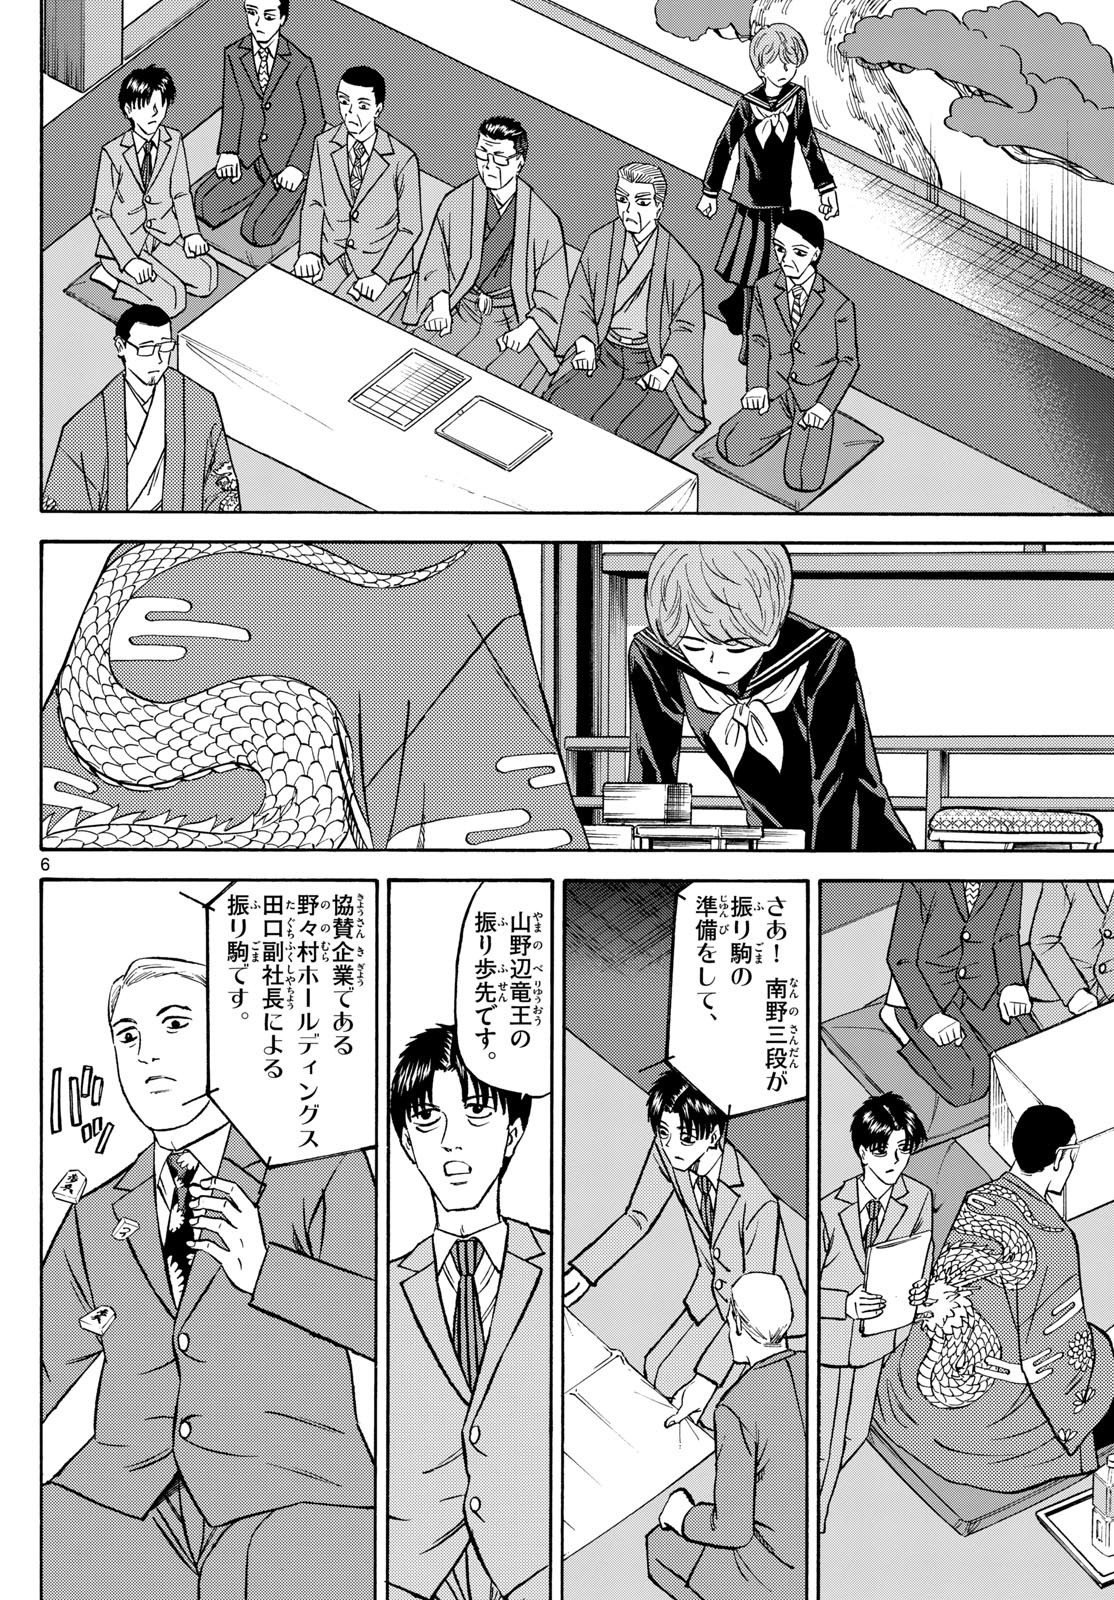 Ryu-to-Ichigo - Chapter 154 - Page 6